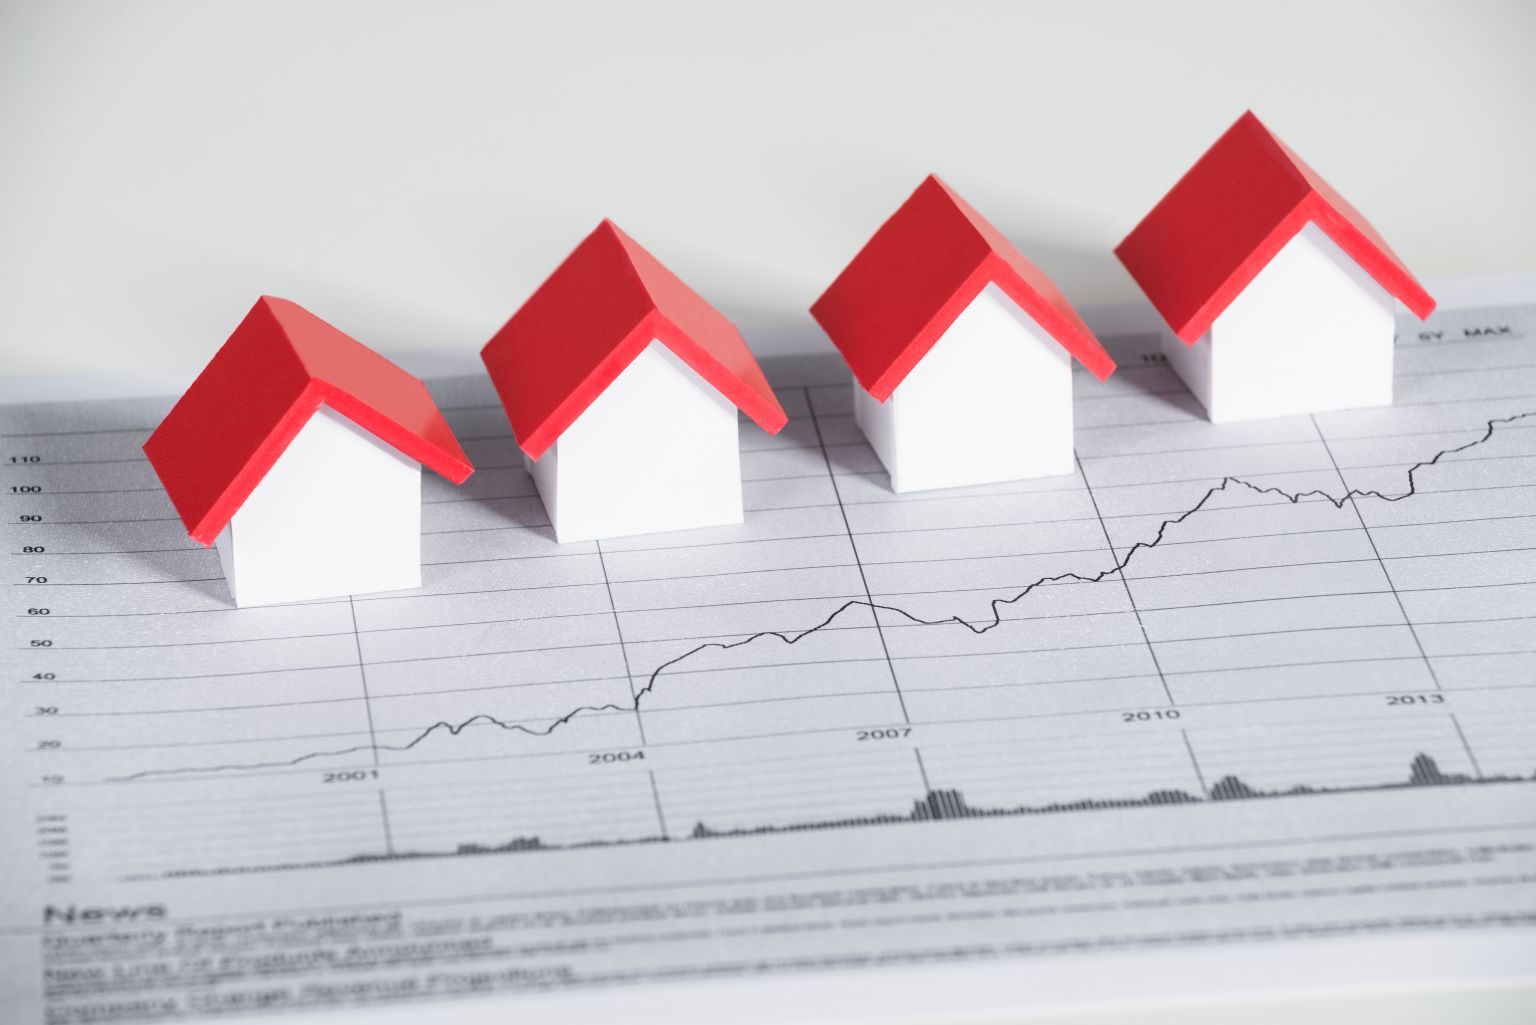 Catella Research: Ende der Niedrigzinspolitik setzt Preisbildung an den europäischen Wohnungsmärkten unter Druck